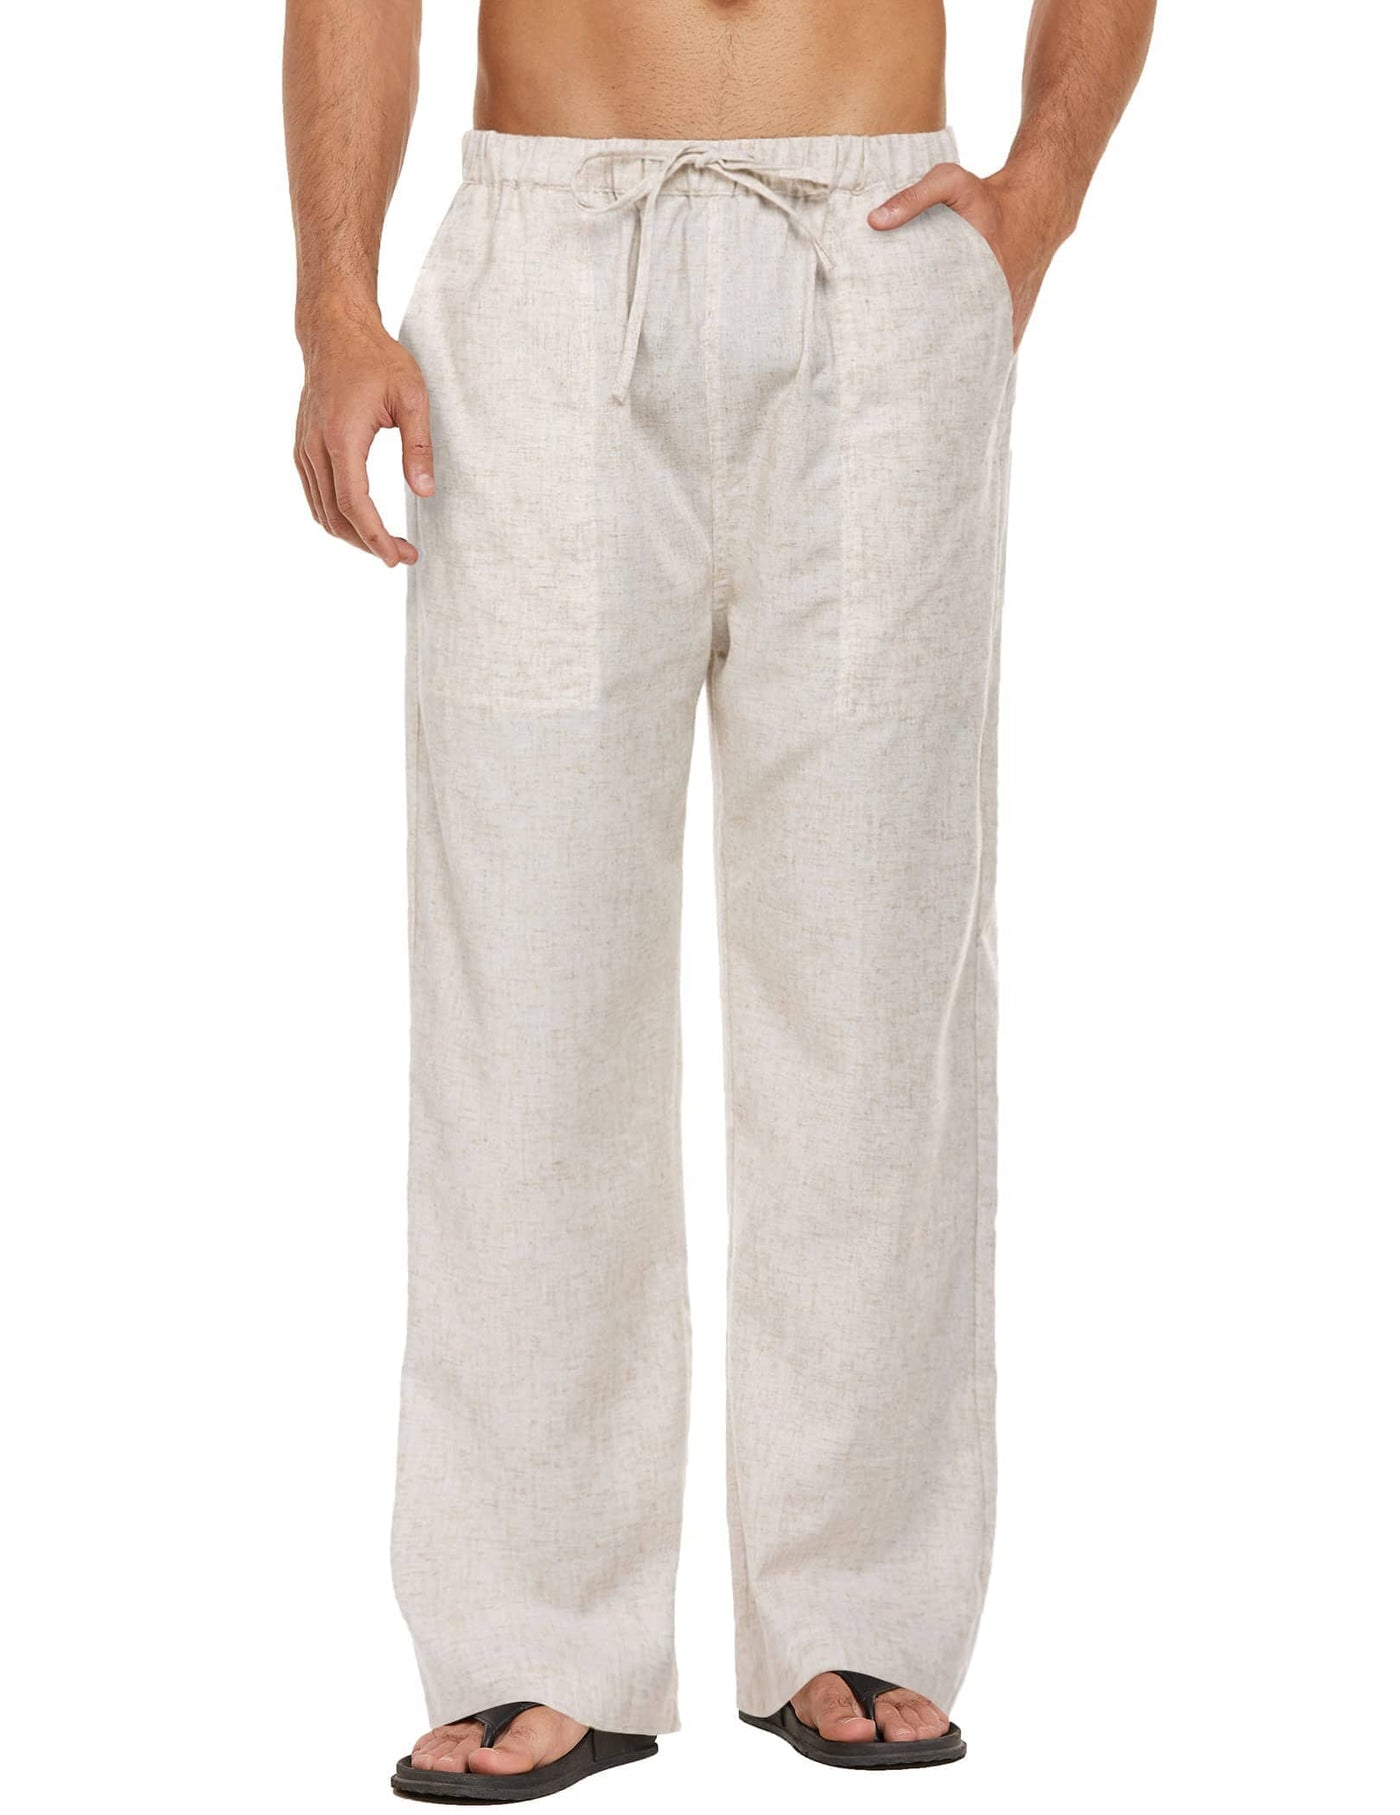 Coofandy Linen Style Elastic Waist Yoga Pants (US Only) Pants coofandy Light Khaki S 